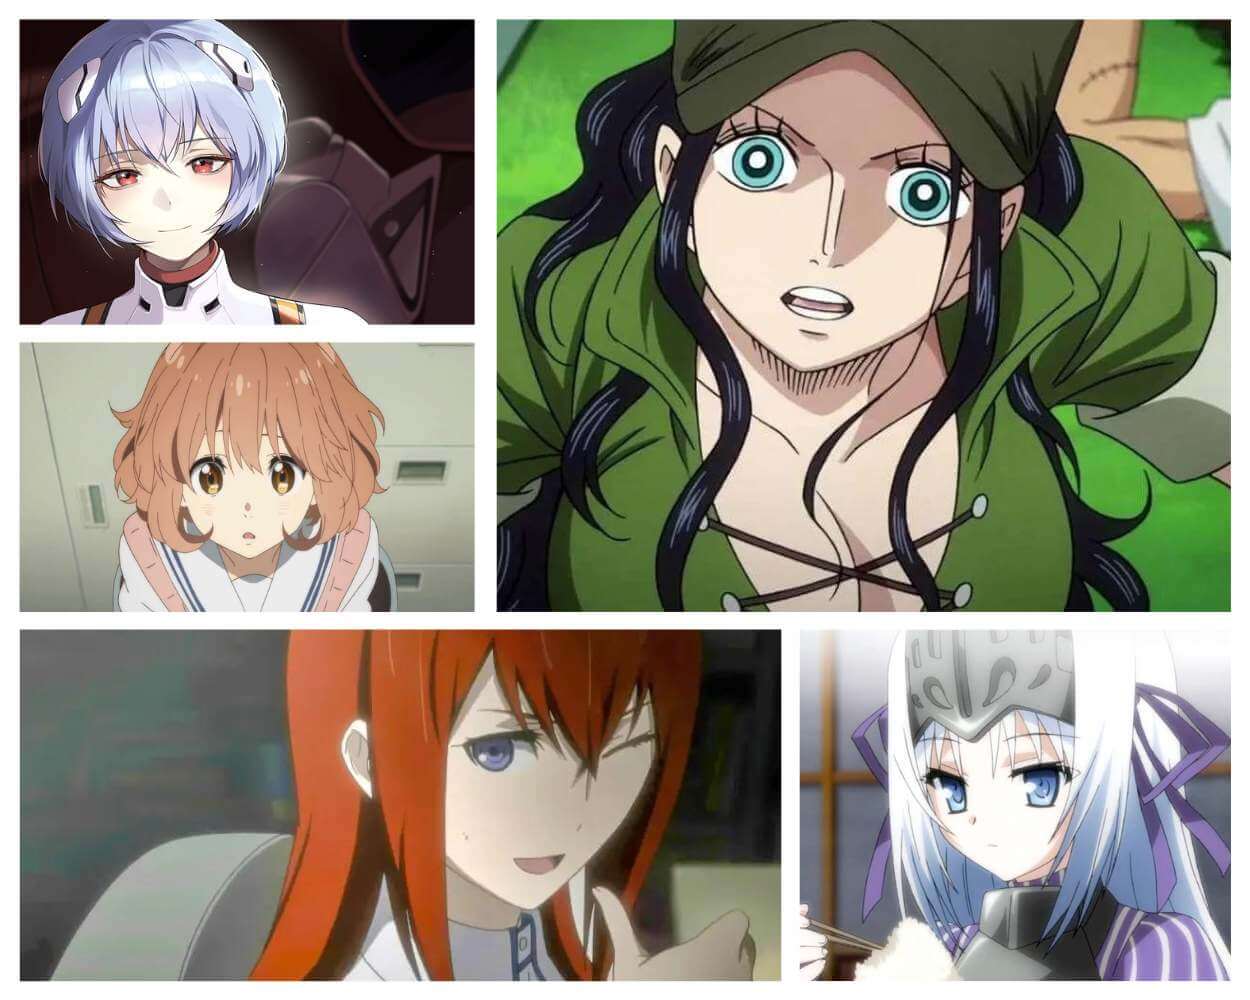 Kuudere Girls In Anime